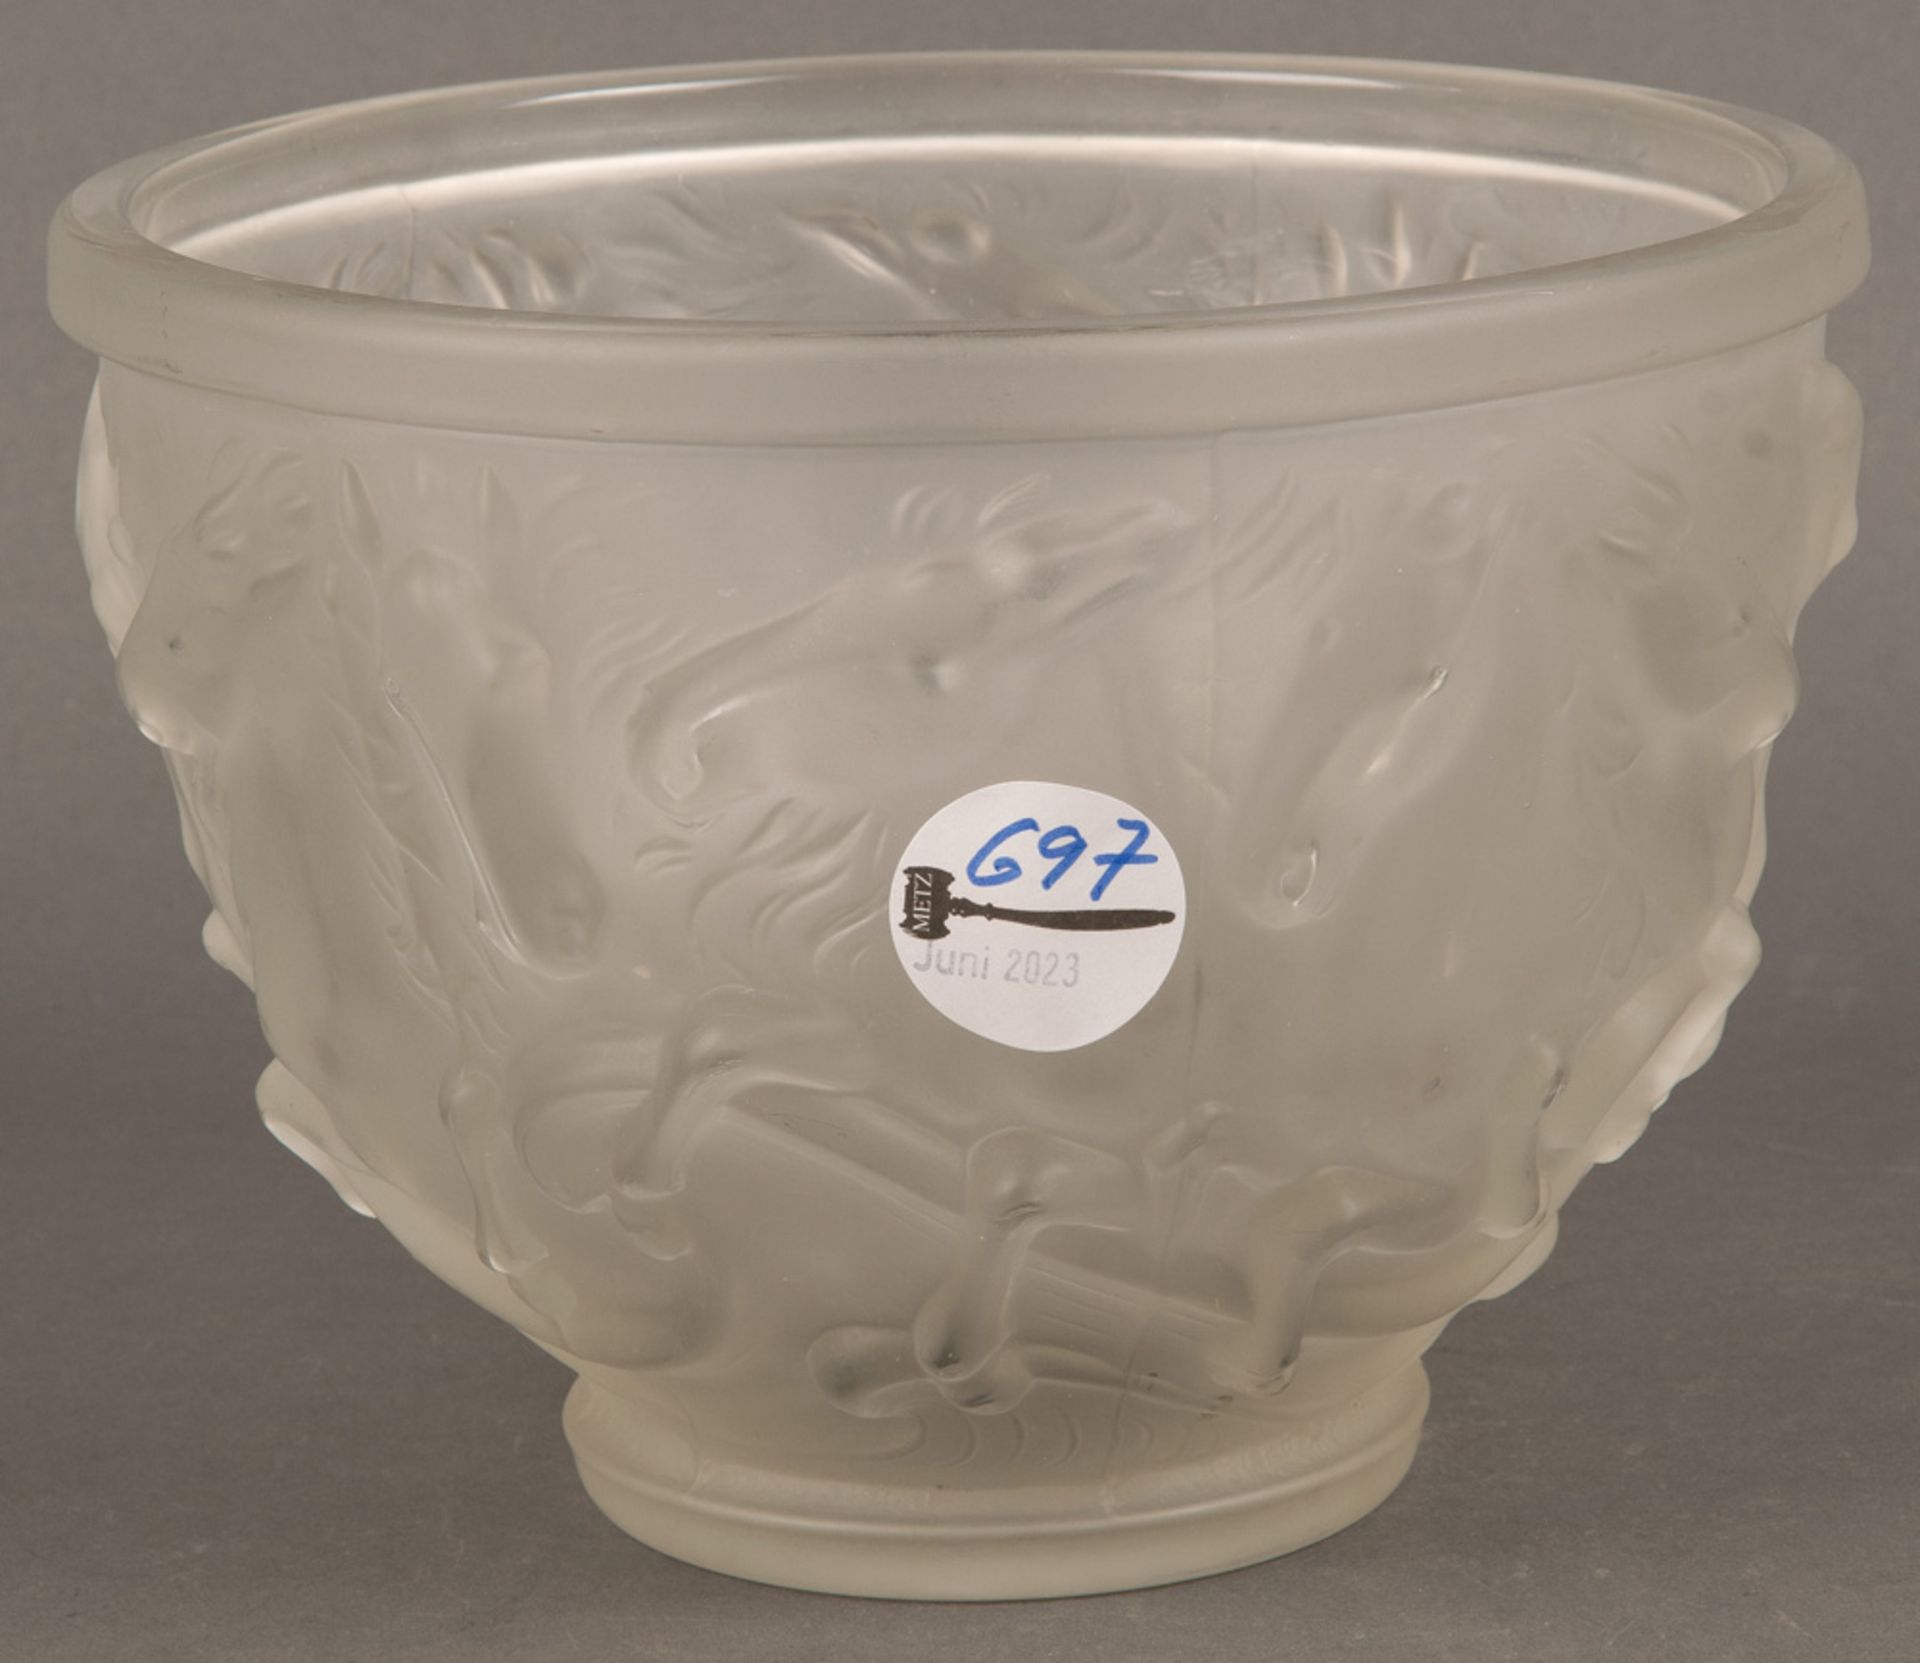 Runde Vase. Wohl Lalique, Frankreich 20. Jh. Farbloses, opakes Glas, umlaufend mit Pferden